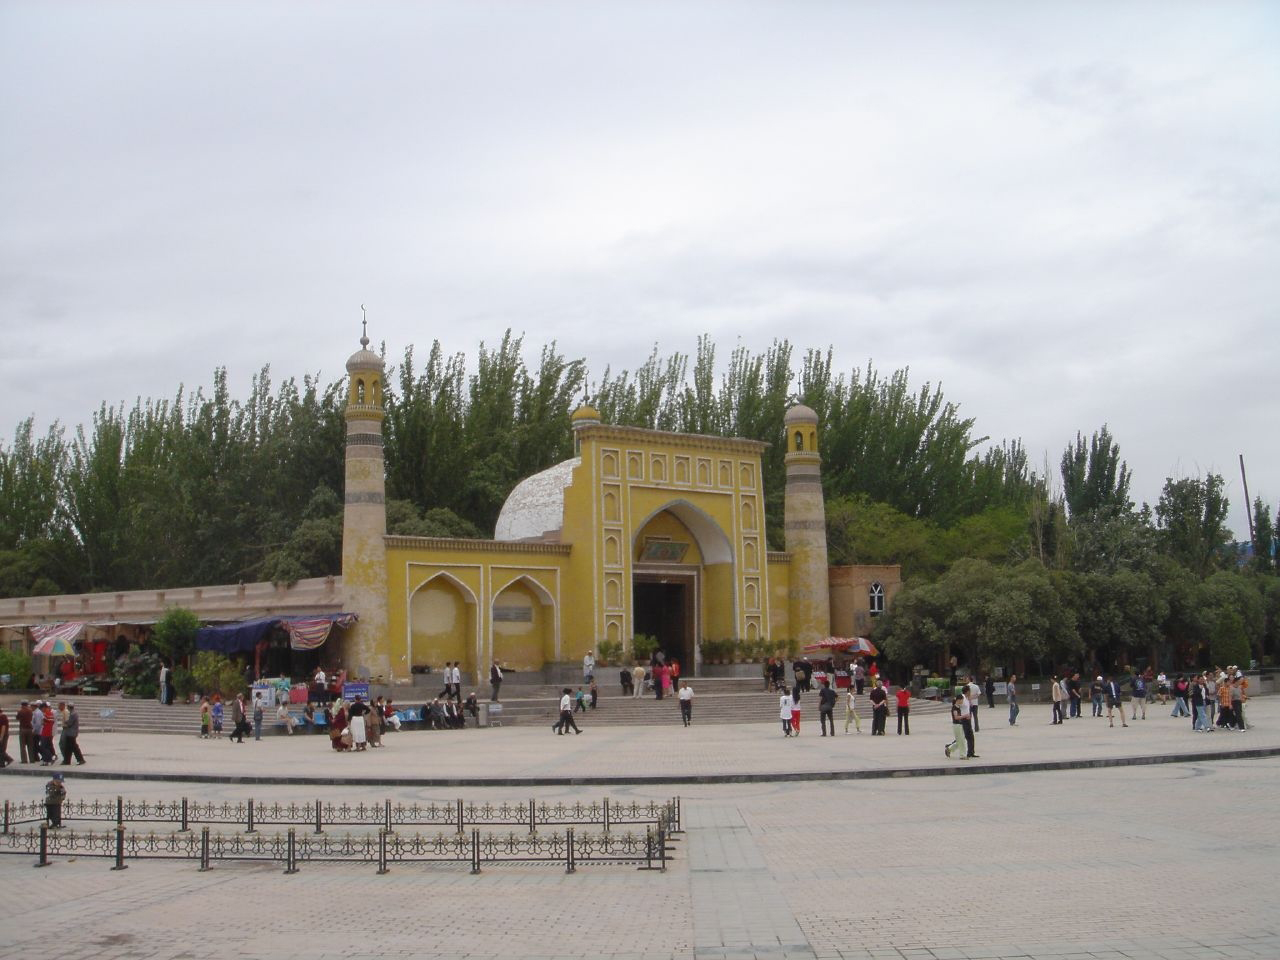 Msliam Mosque